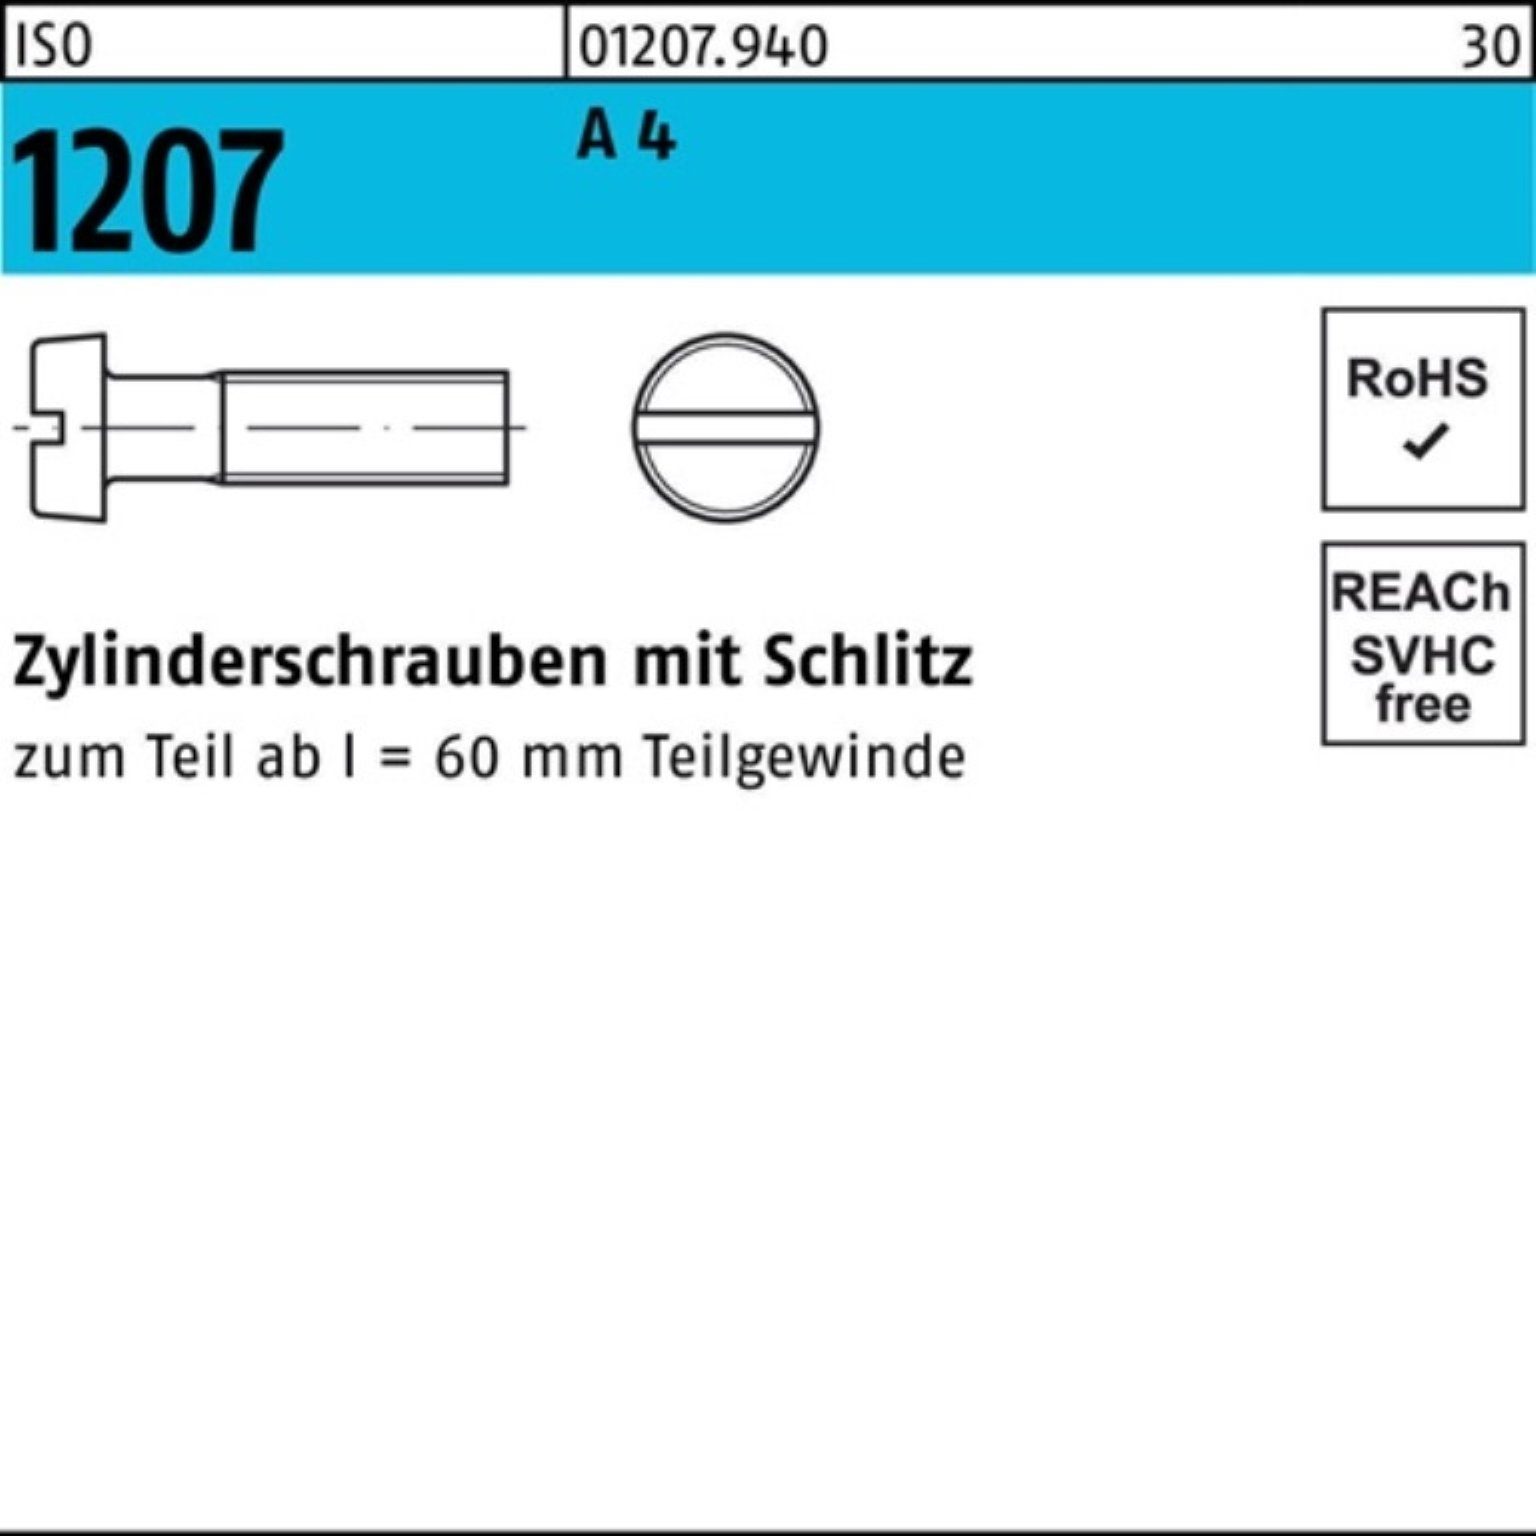 Pack 12 200 4 Zylinderschraube A Schlitz 200er Zylinderschraube M2x Reyher Stück 1207 ISO ISO